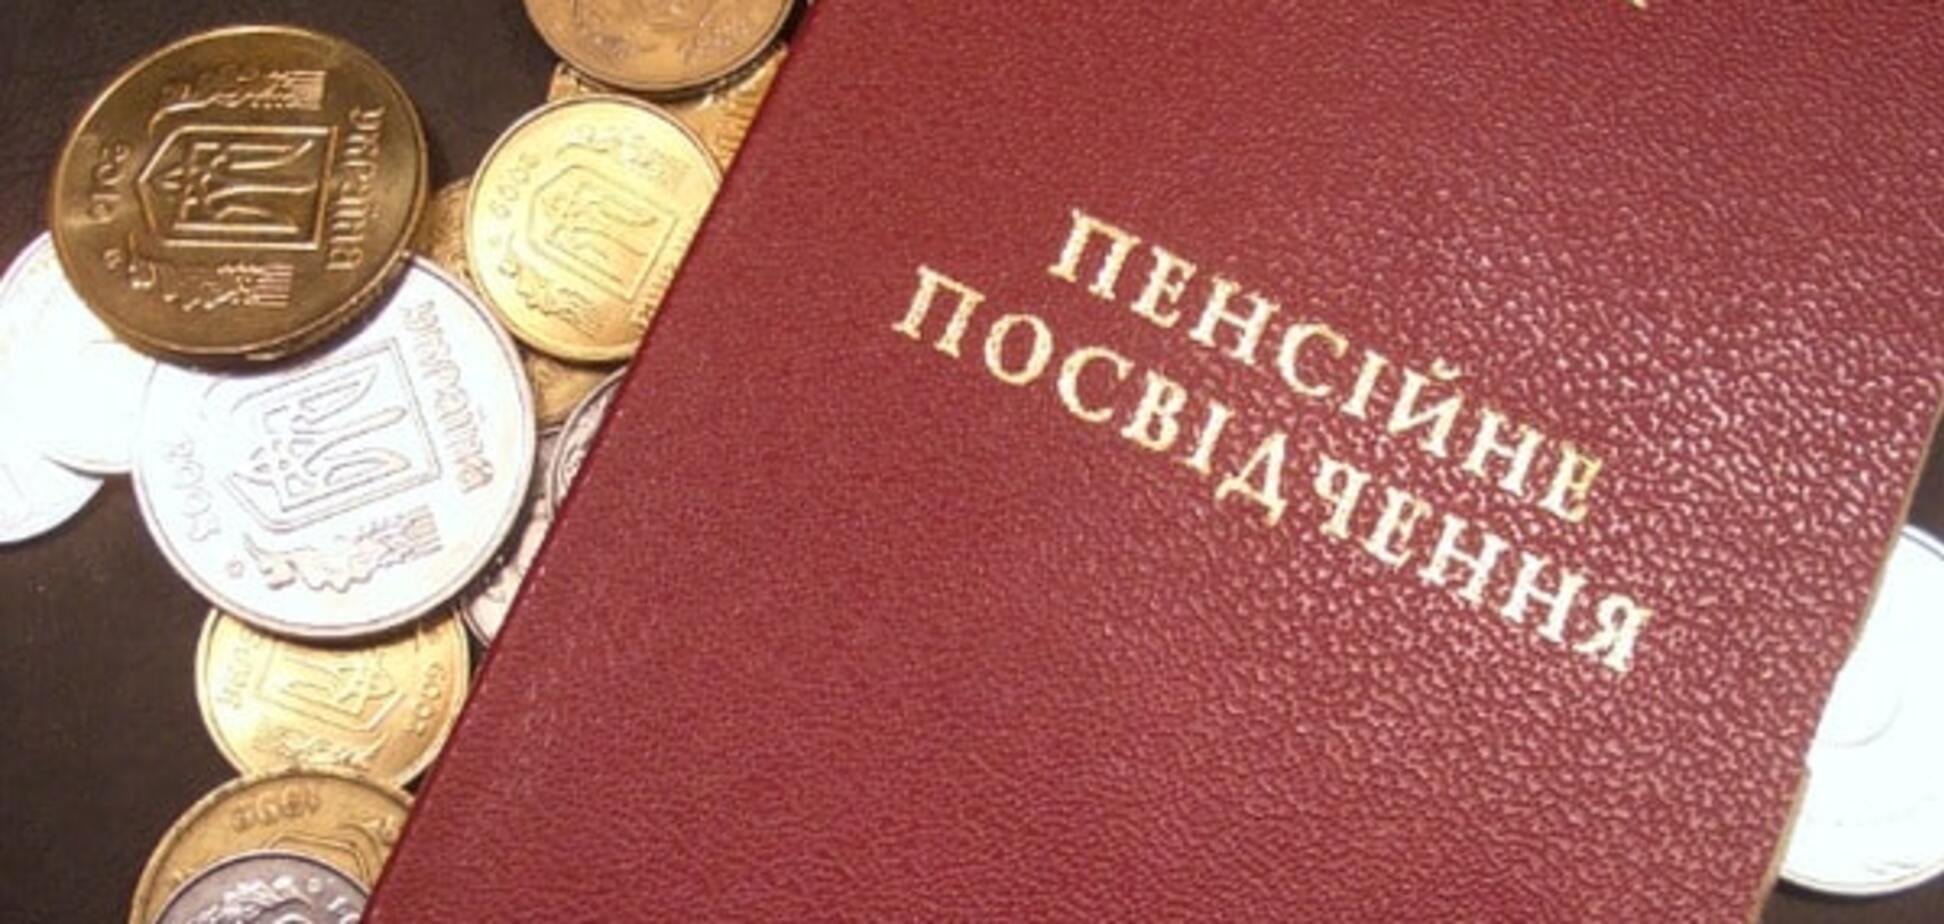  Не депутати: стало відомо, хто в Україні отримує найбільші пенсії